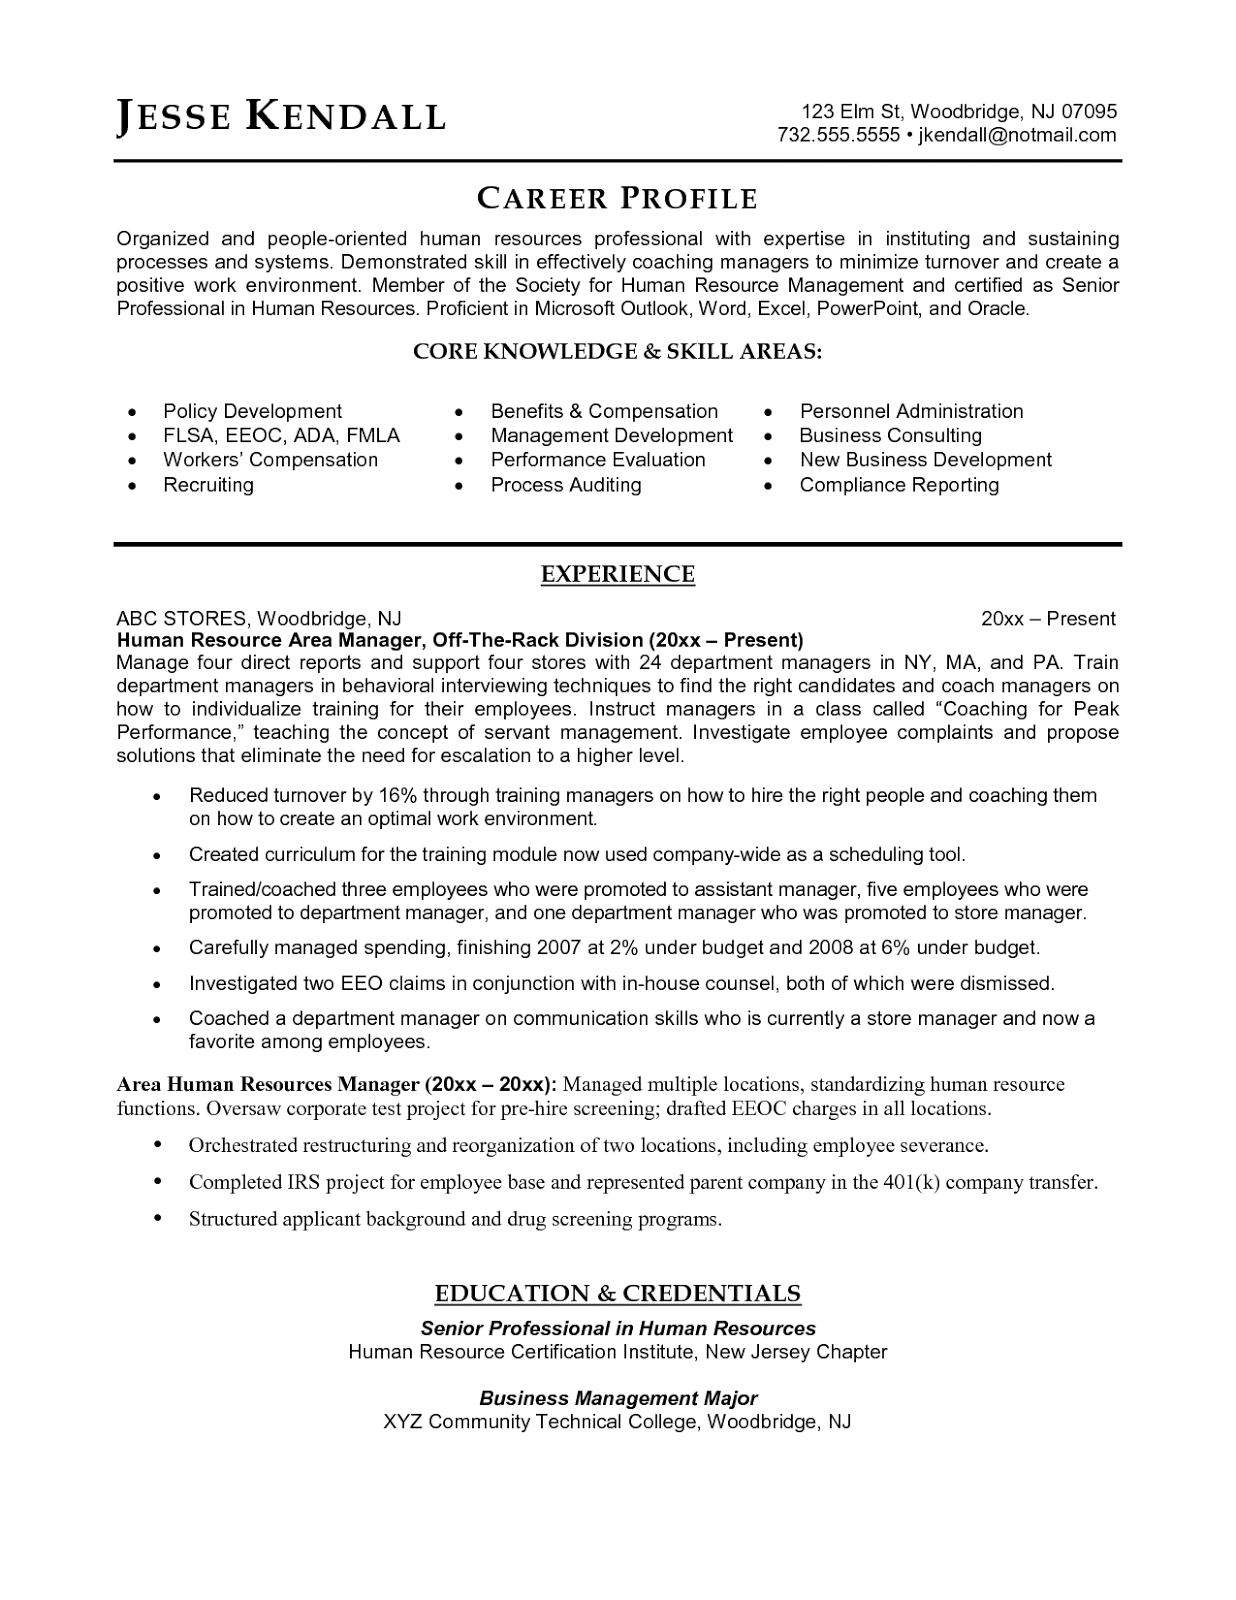 Functional resume sample for telcom tech